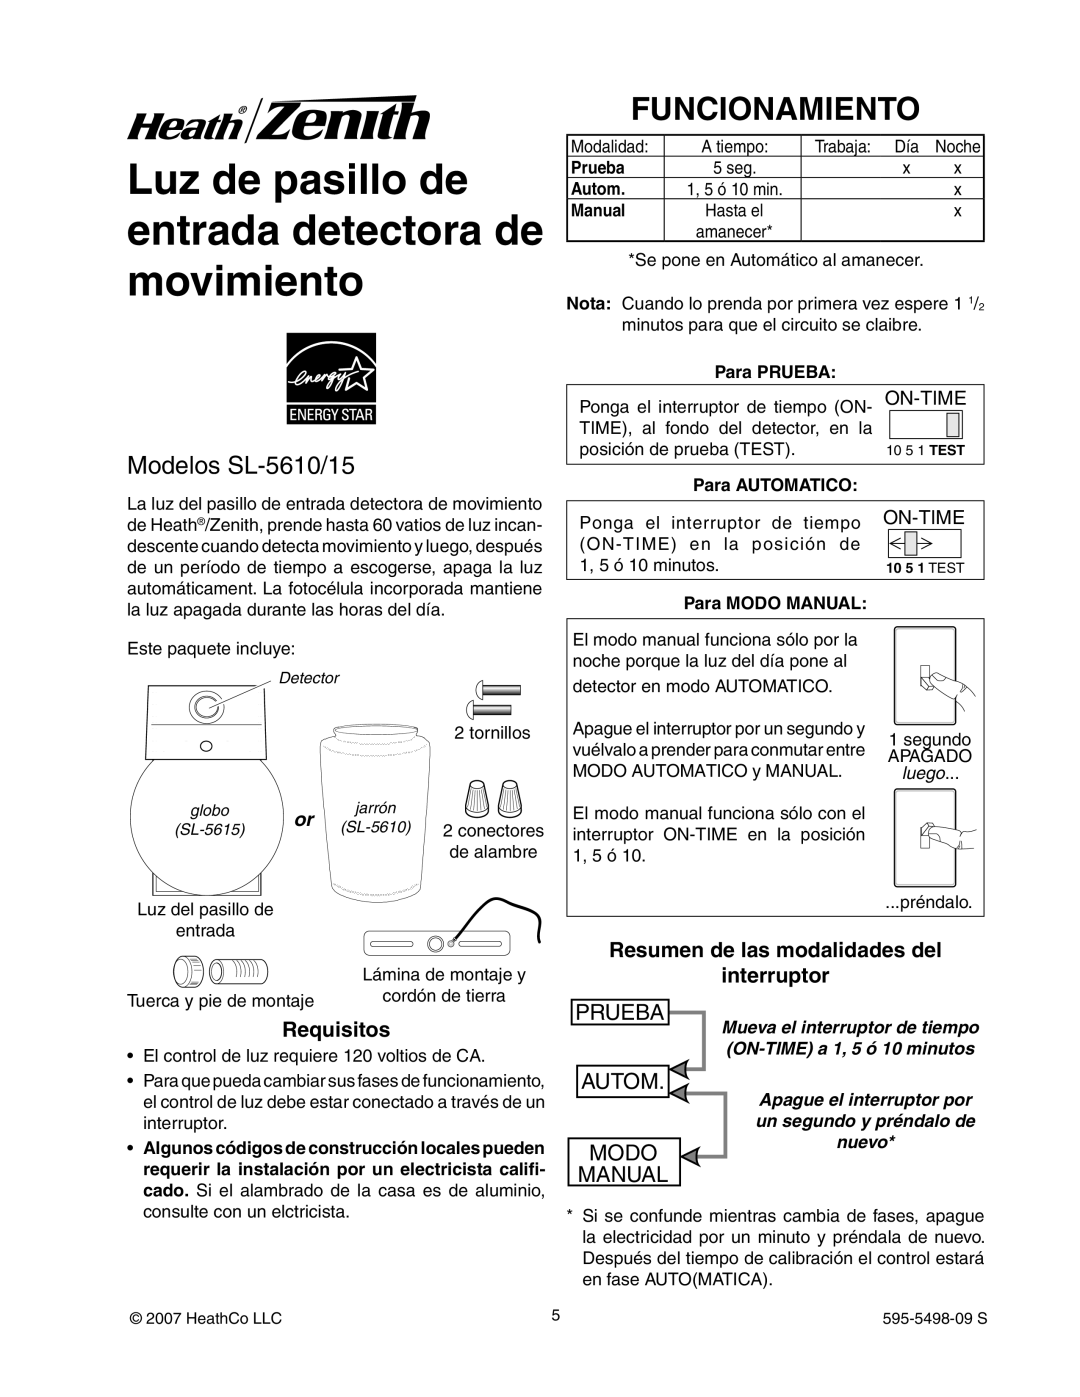 Heath Zenith Luz de pasillo de entrada detectora de movimiento, Funcionamiento, Modelos SL-5610/15, Prueba, Autom, Modo 